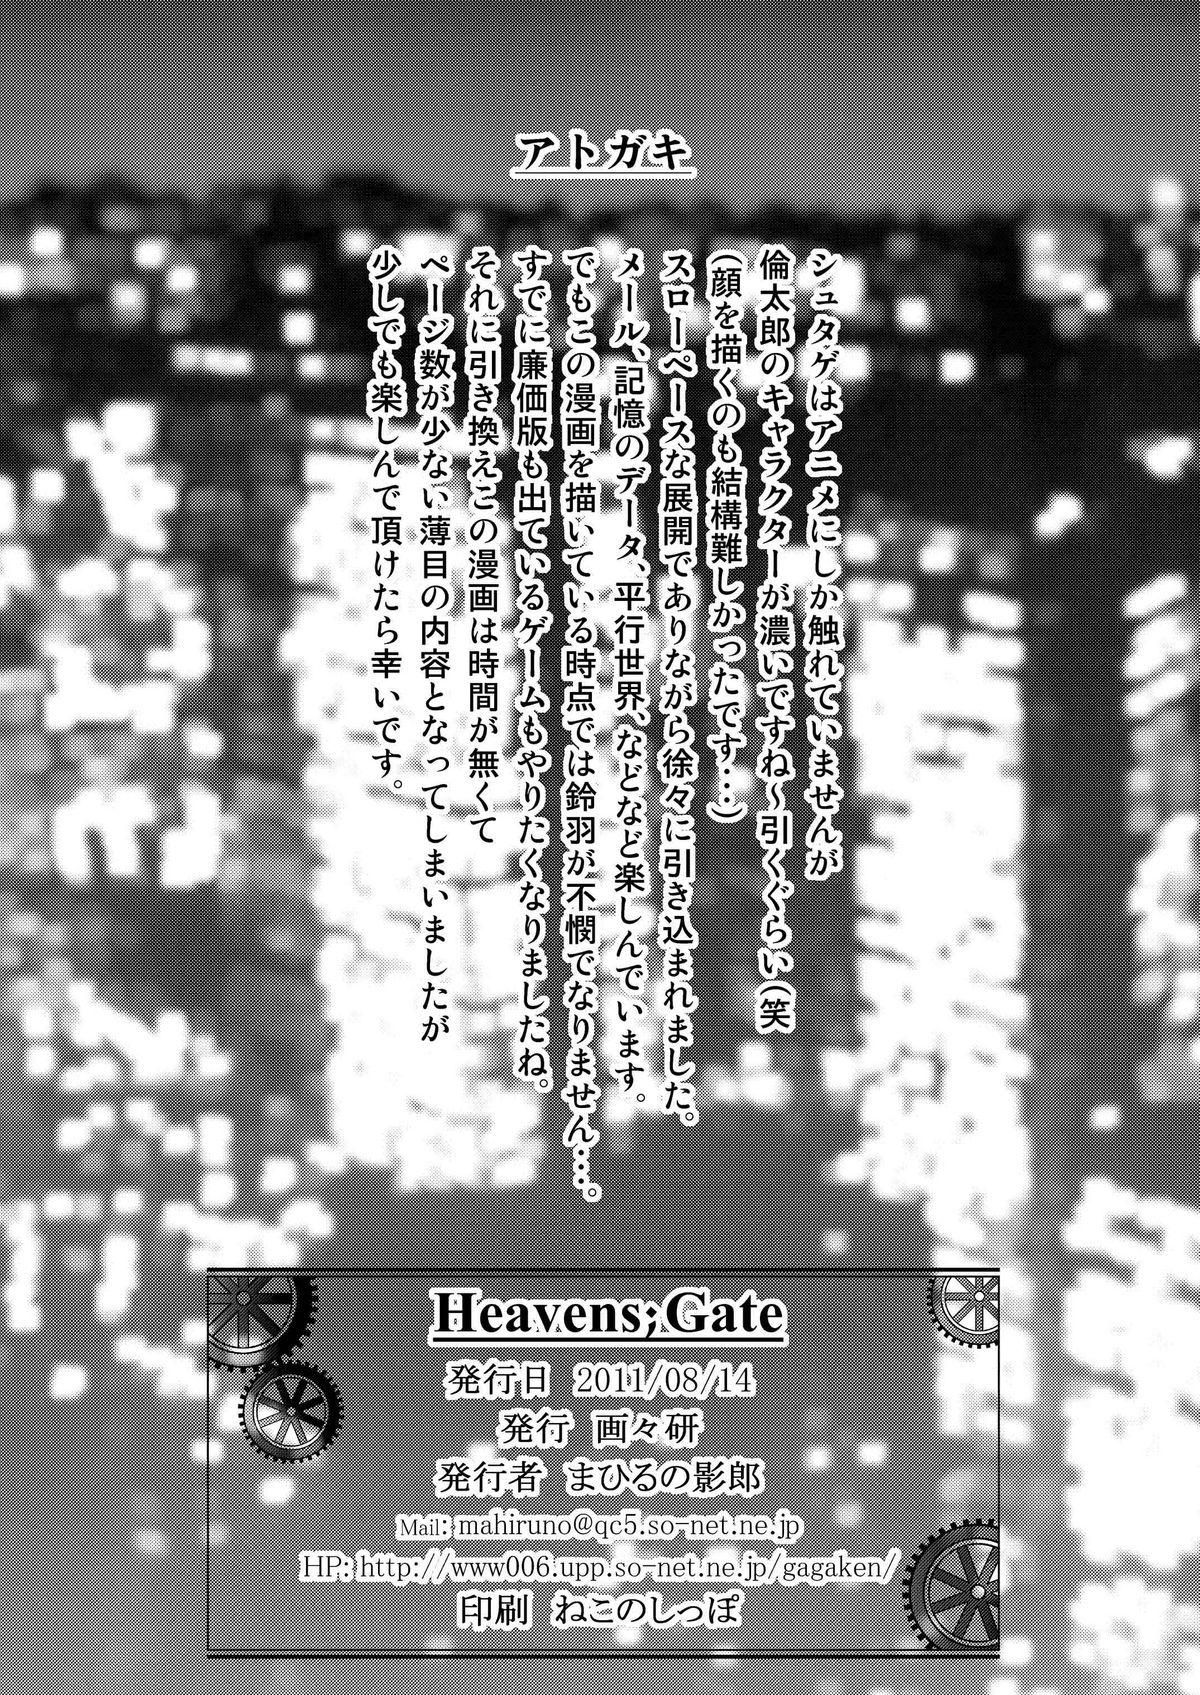 Heavens;Gate 17